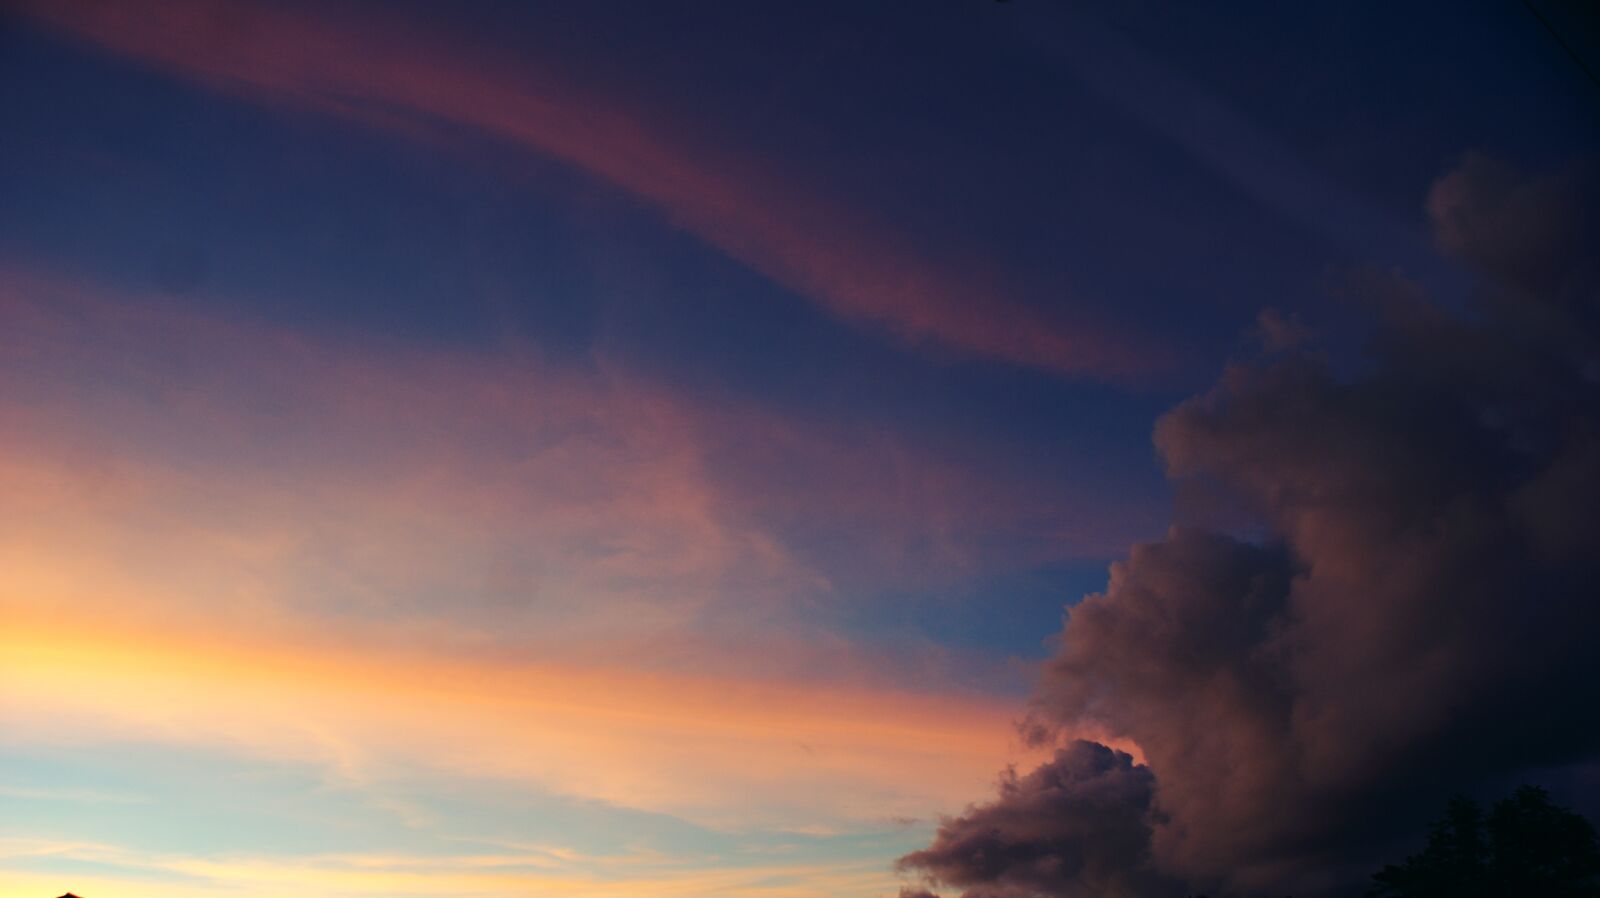 Sony Alpha DSLR-A350 sample photo. Clouds, majestic, sky photography